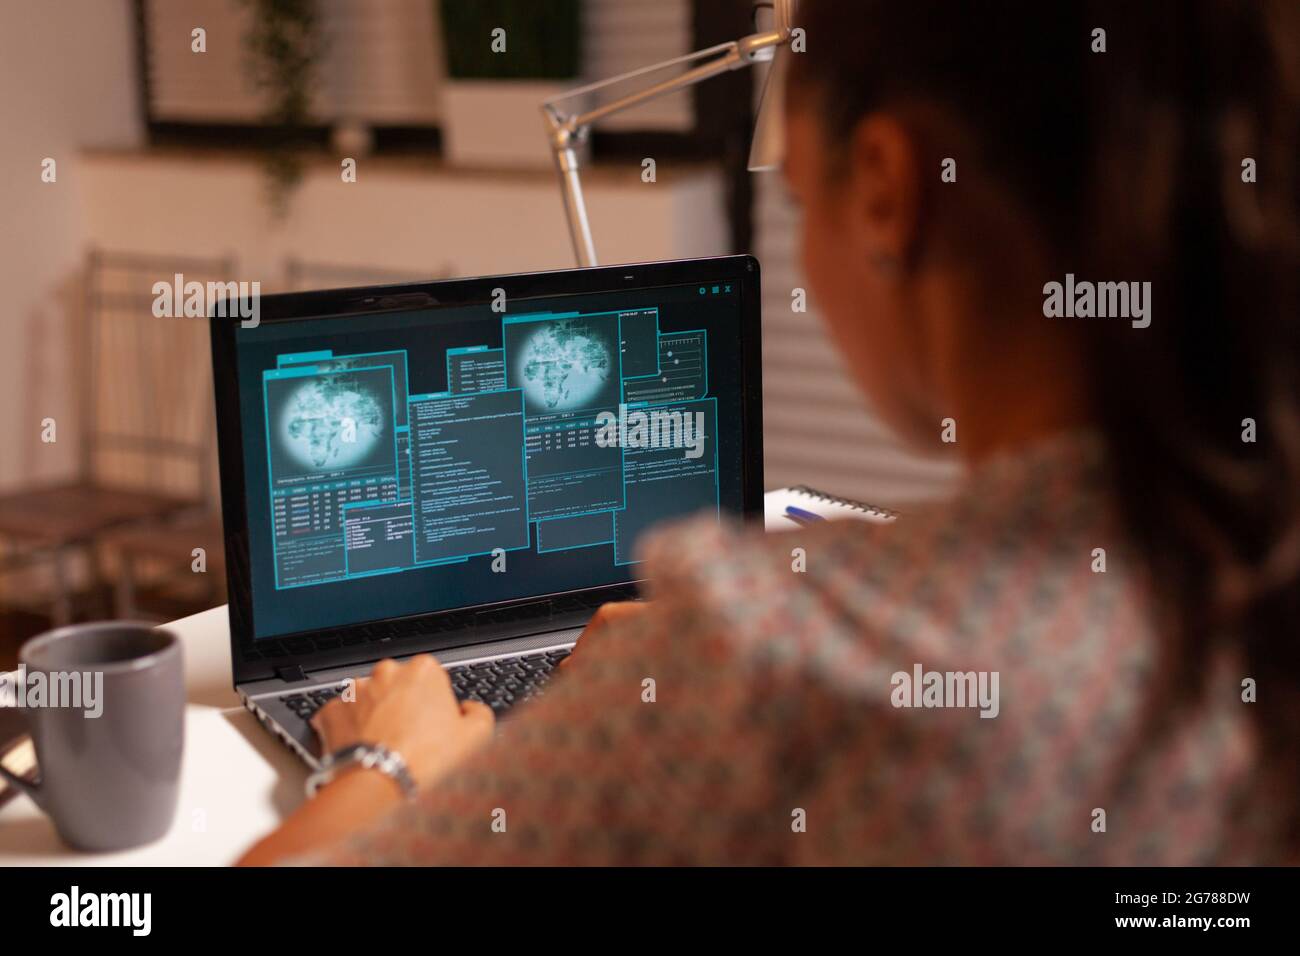 Frau tun Cyberspace kriminelle Aktivität Hacking Firewall mit Laptop aus dem Heimbüro in der Nacht. Programmierer schreiben eine gefährliche Malware für Cyber-Angriffe mit Performance-Laptop während Mitternacht. Stockfoto